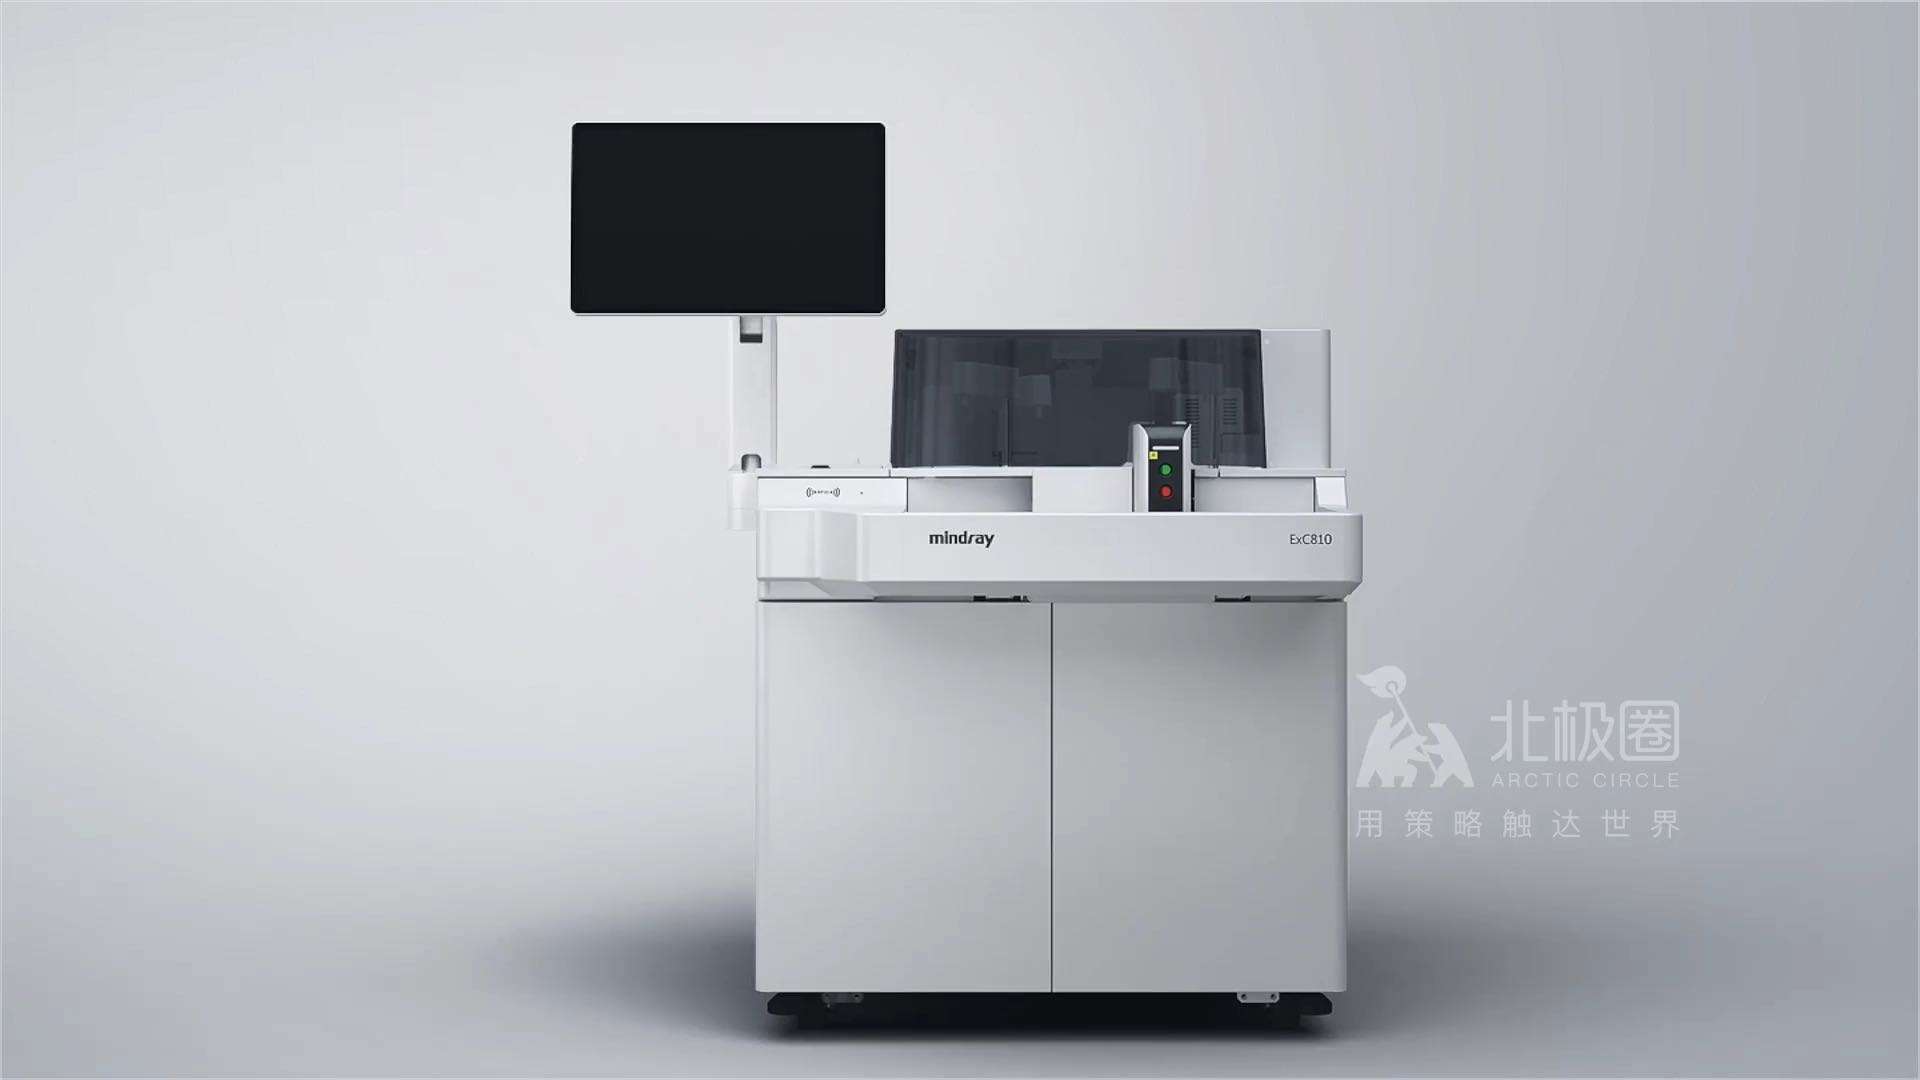 北极圈 X 迈瑞 凝血分析仪EXC 810 医疗器械宣传动画